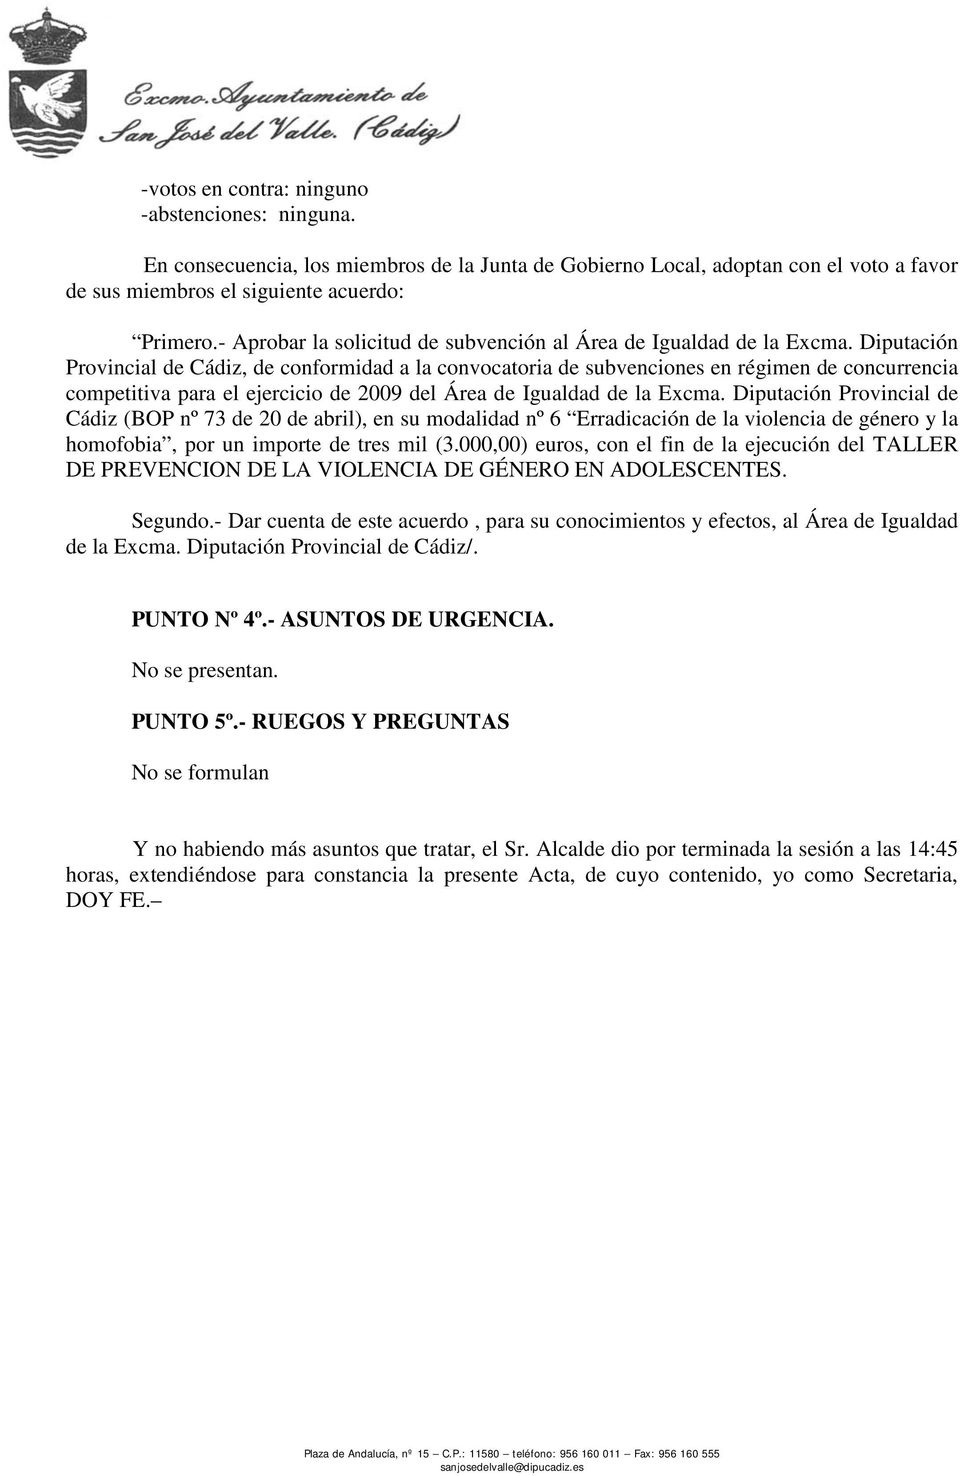 Diputación Provincial de Cádiz (BOP nº 73 de 20 de abril), en su modalidad nº 6 Erradicación de la violencia de género y la homofobia, por un importe de tres mil (3.